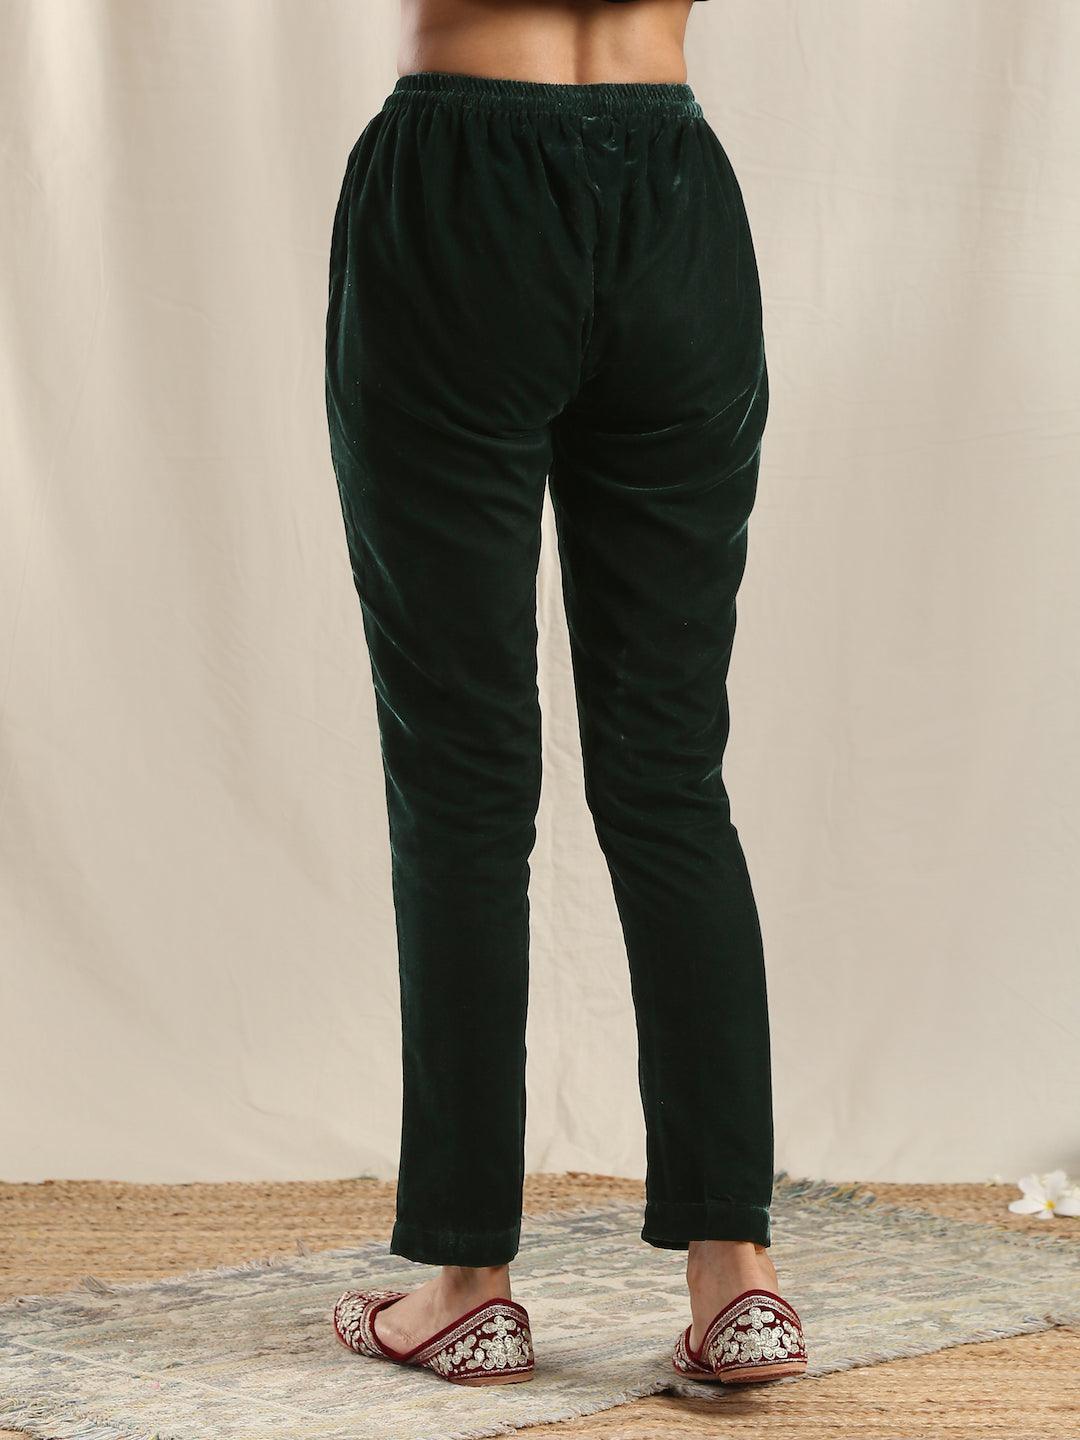 trueBrowns Green Velvet Pant - Distacart